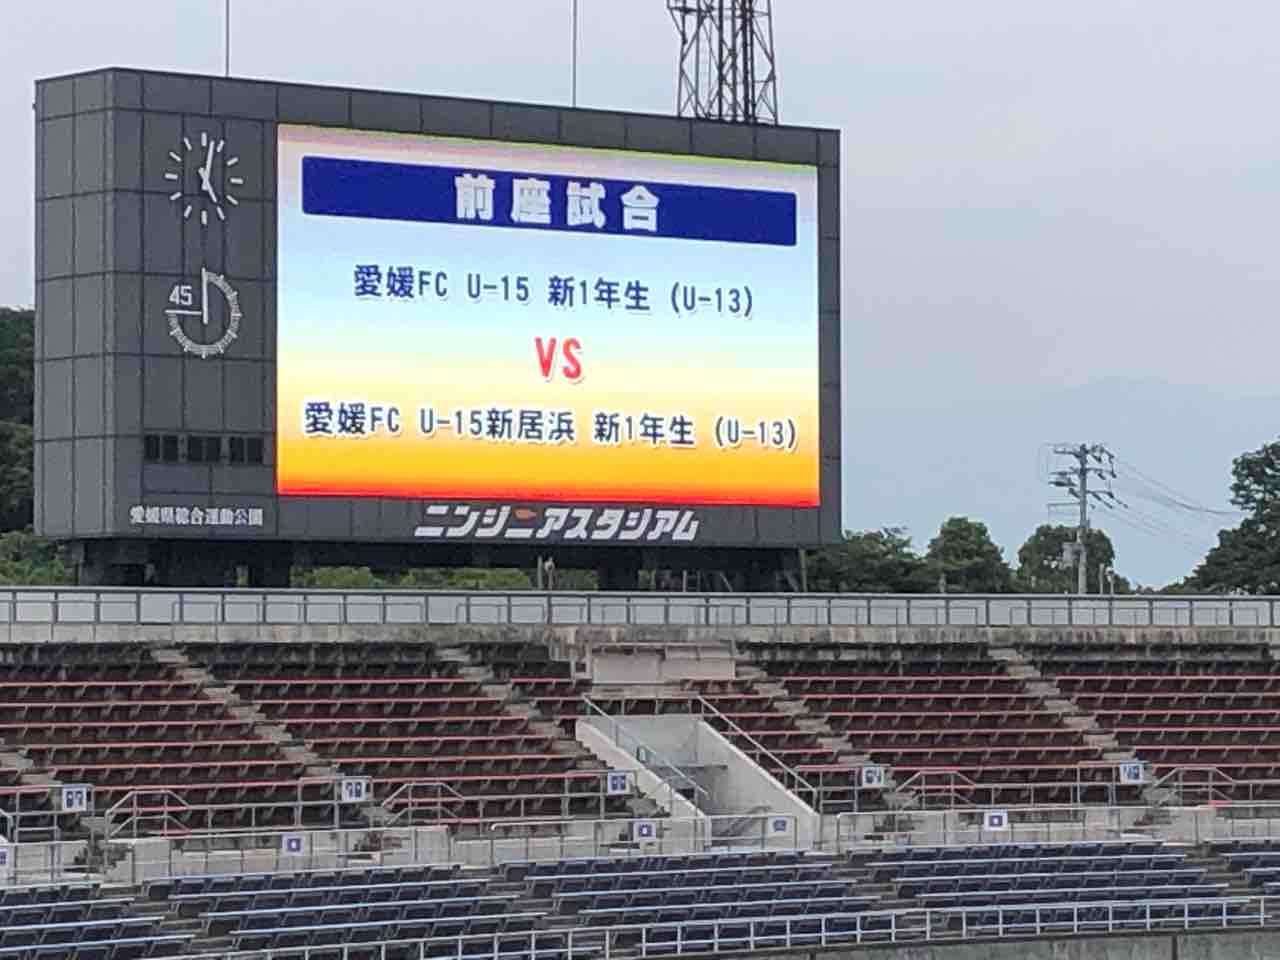 愛媛fc Uｰ15 Vs 愛媛fc Uｰ15新居浜 新1年お披露目試合 松山サッカースクール 美しく勝利せよ